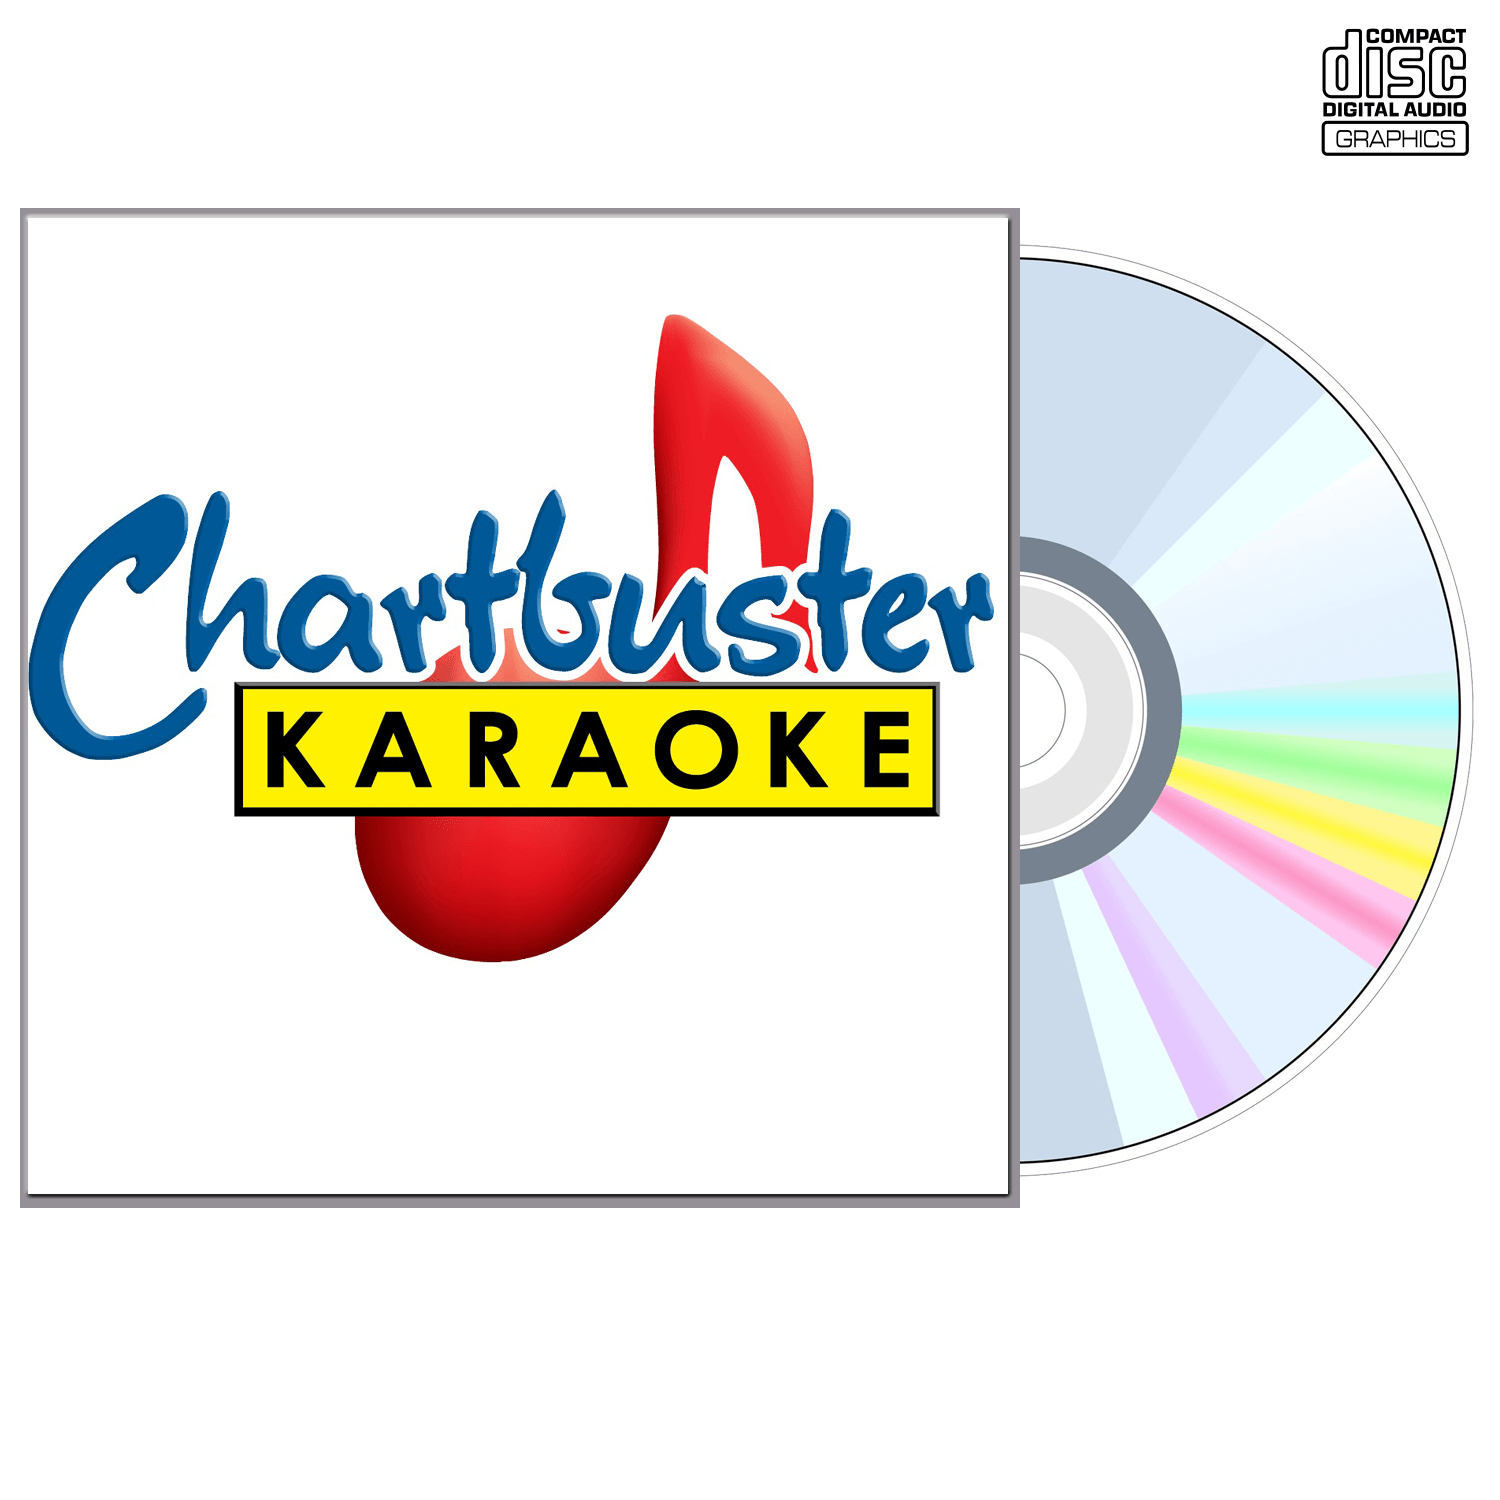 Best Of Mark Chesnutt - CD+G - Chartbuster Karaoke - Karaoke Home Entertainment